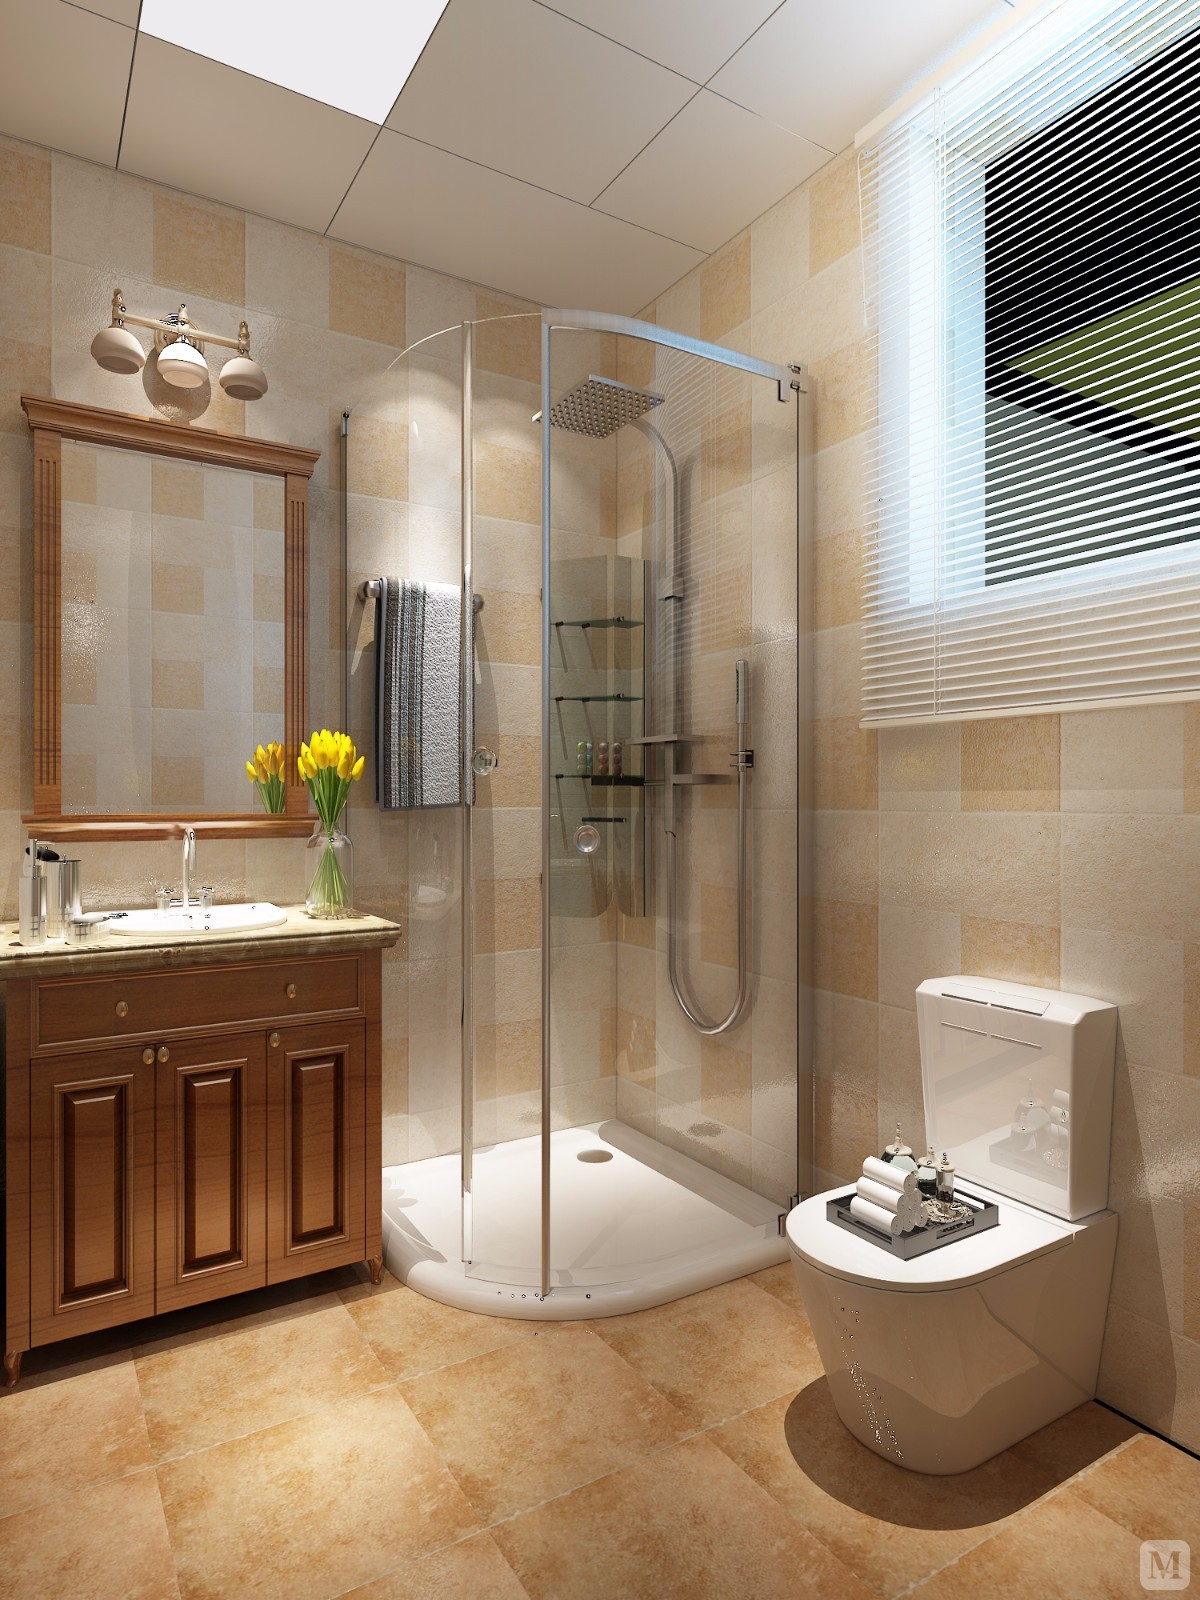 卫浴间使用格子为主基调，层层递增，有亮黄到深黄的渐变使空间的氛围格外“清凉”、“干净”。独立的淋浴空间让整体更加显得私密与温情。